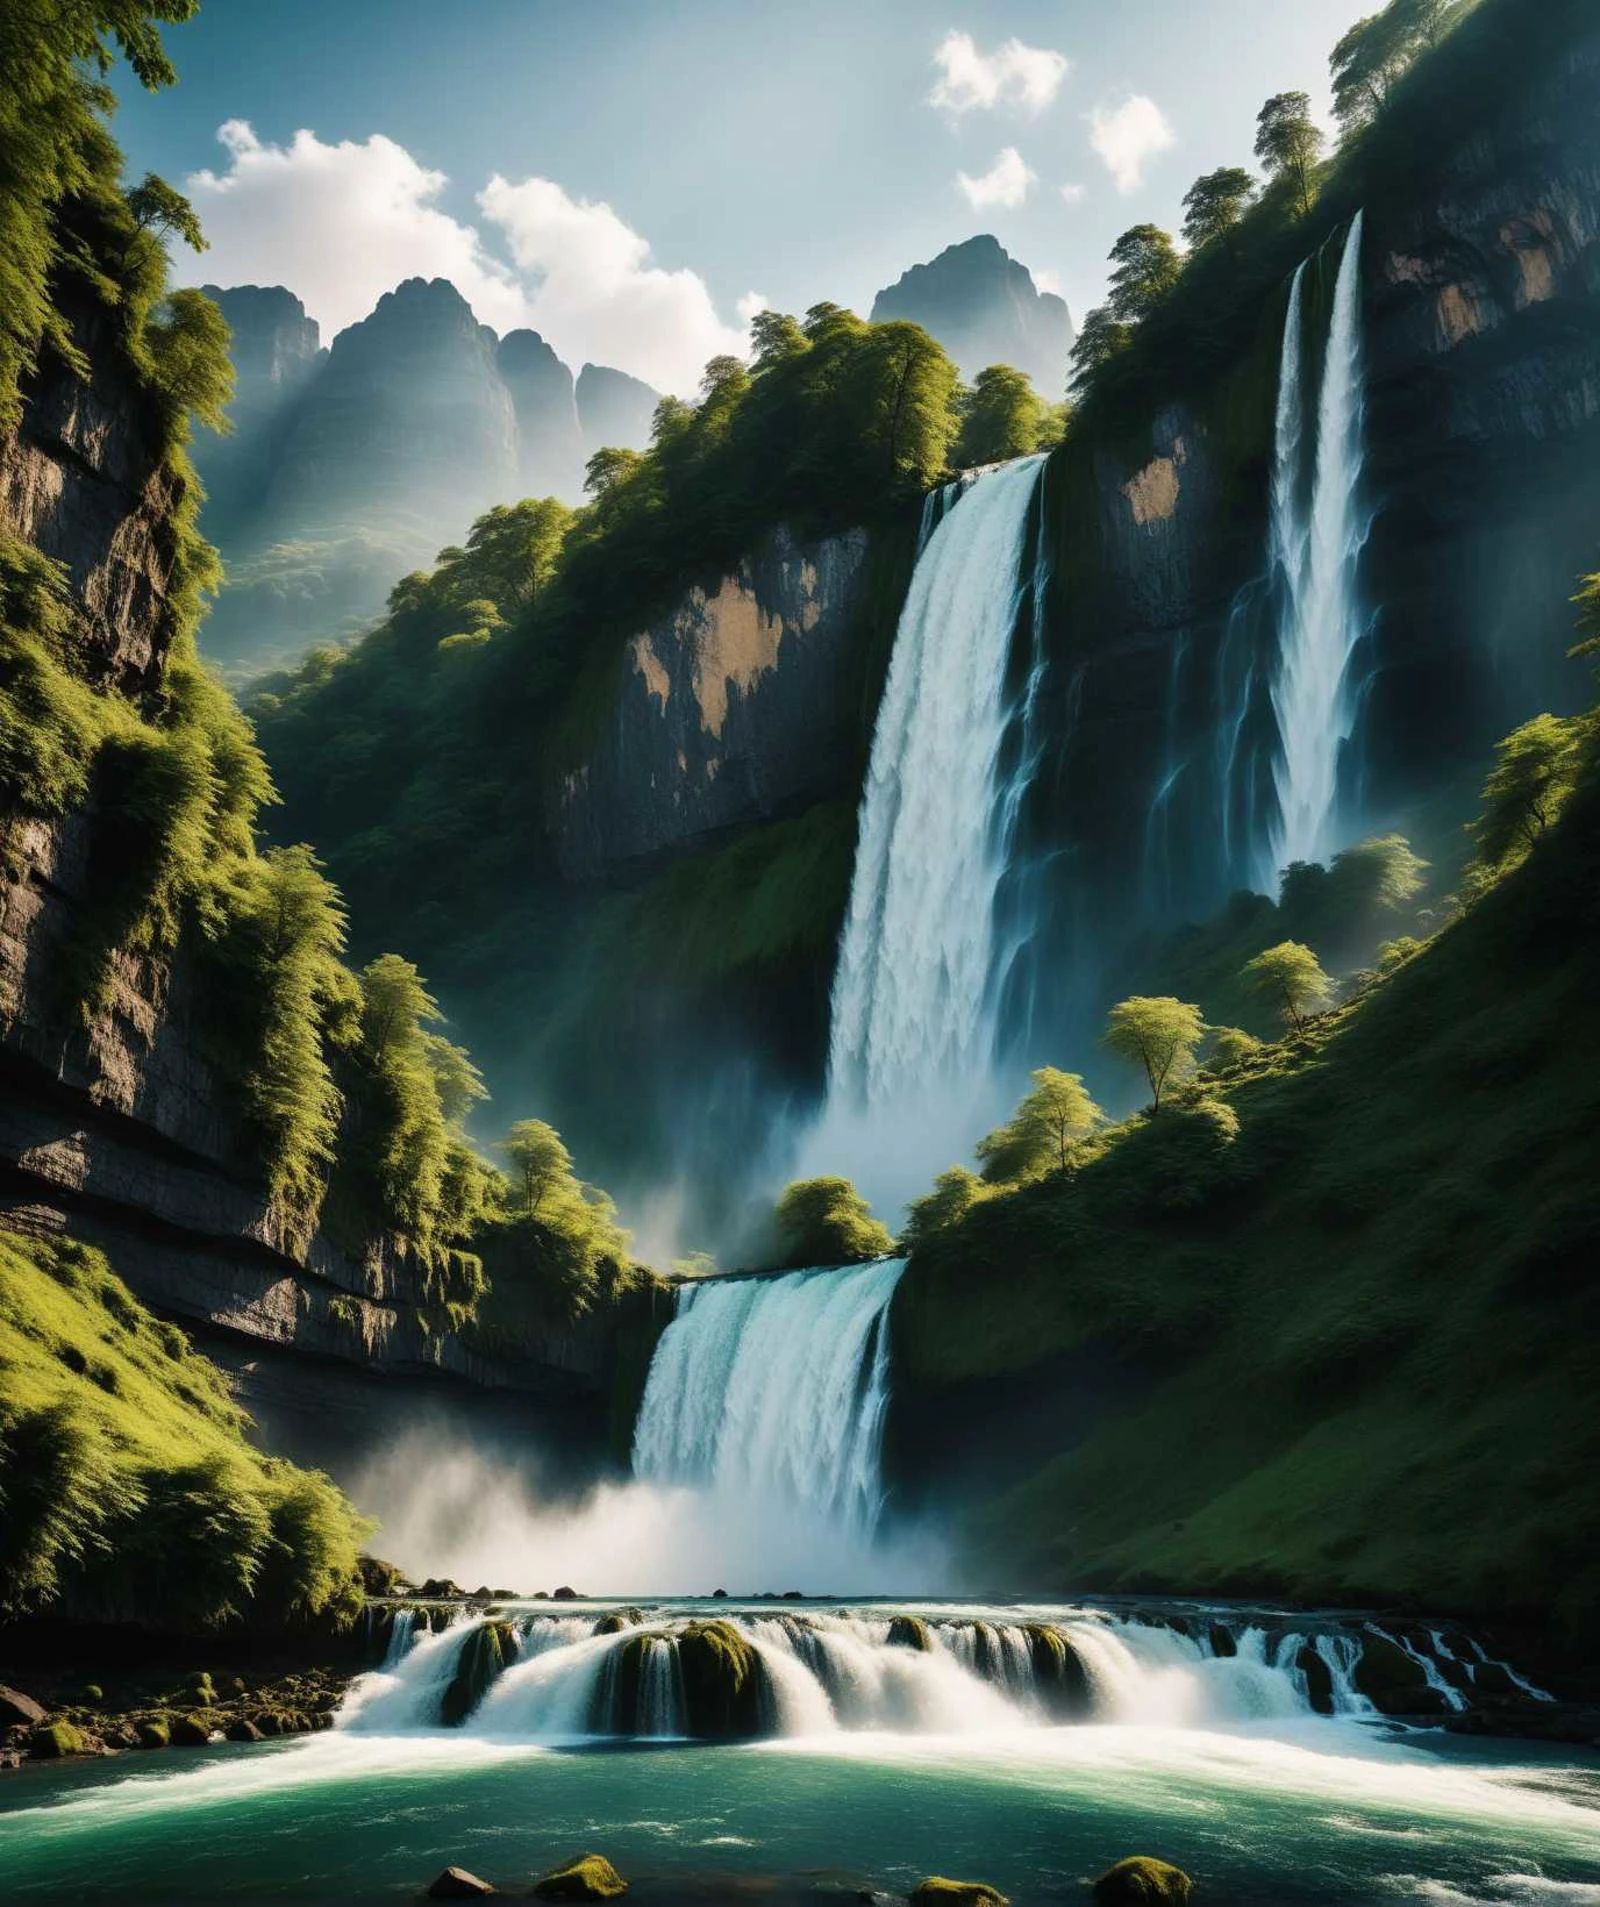 Natureza bela, cachoeira, montanha, foto dinâmica, cinematic, rico, contraste